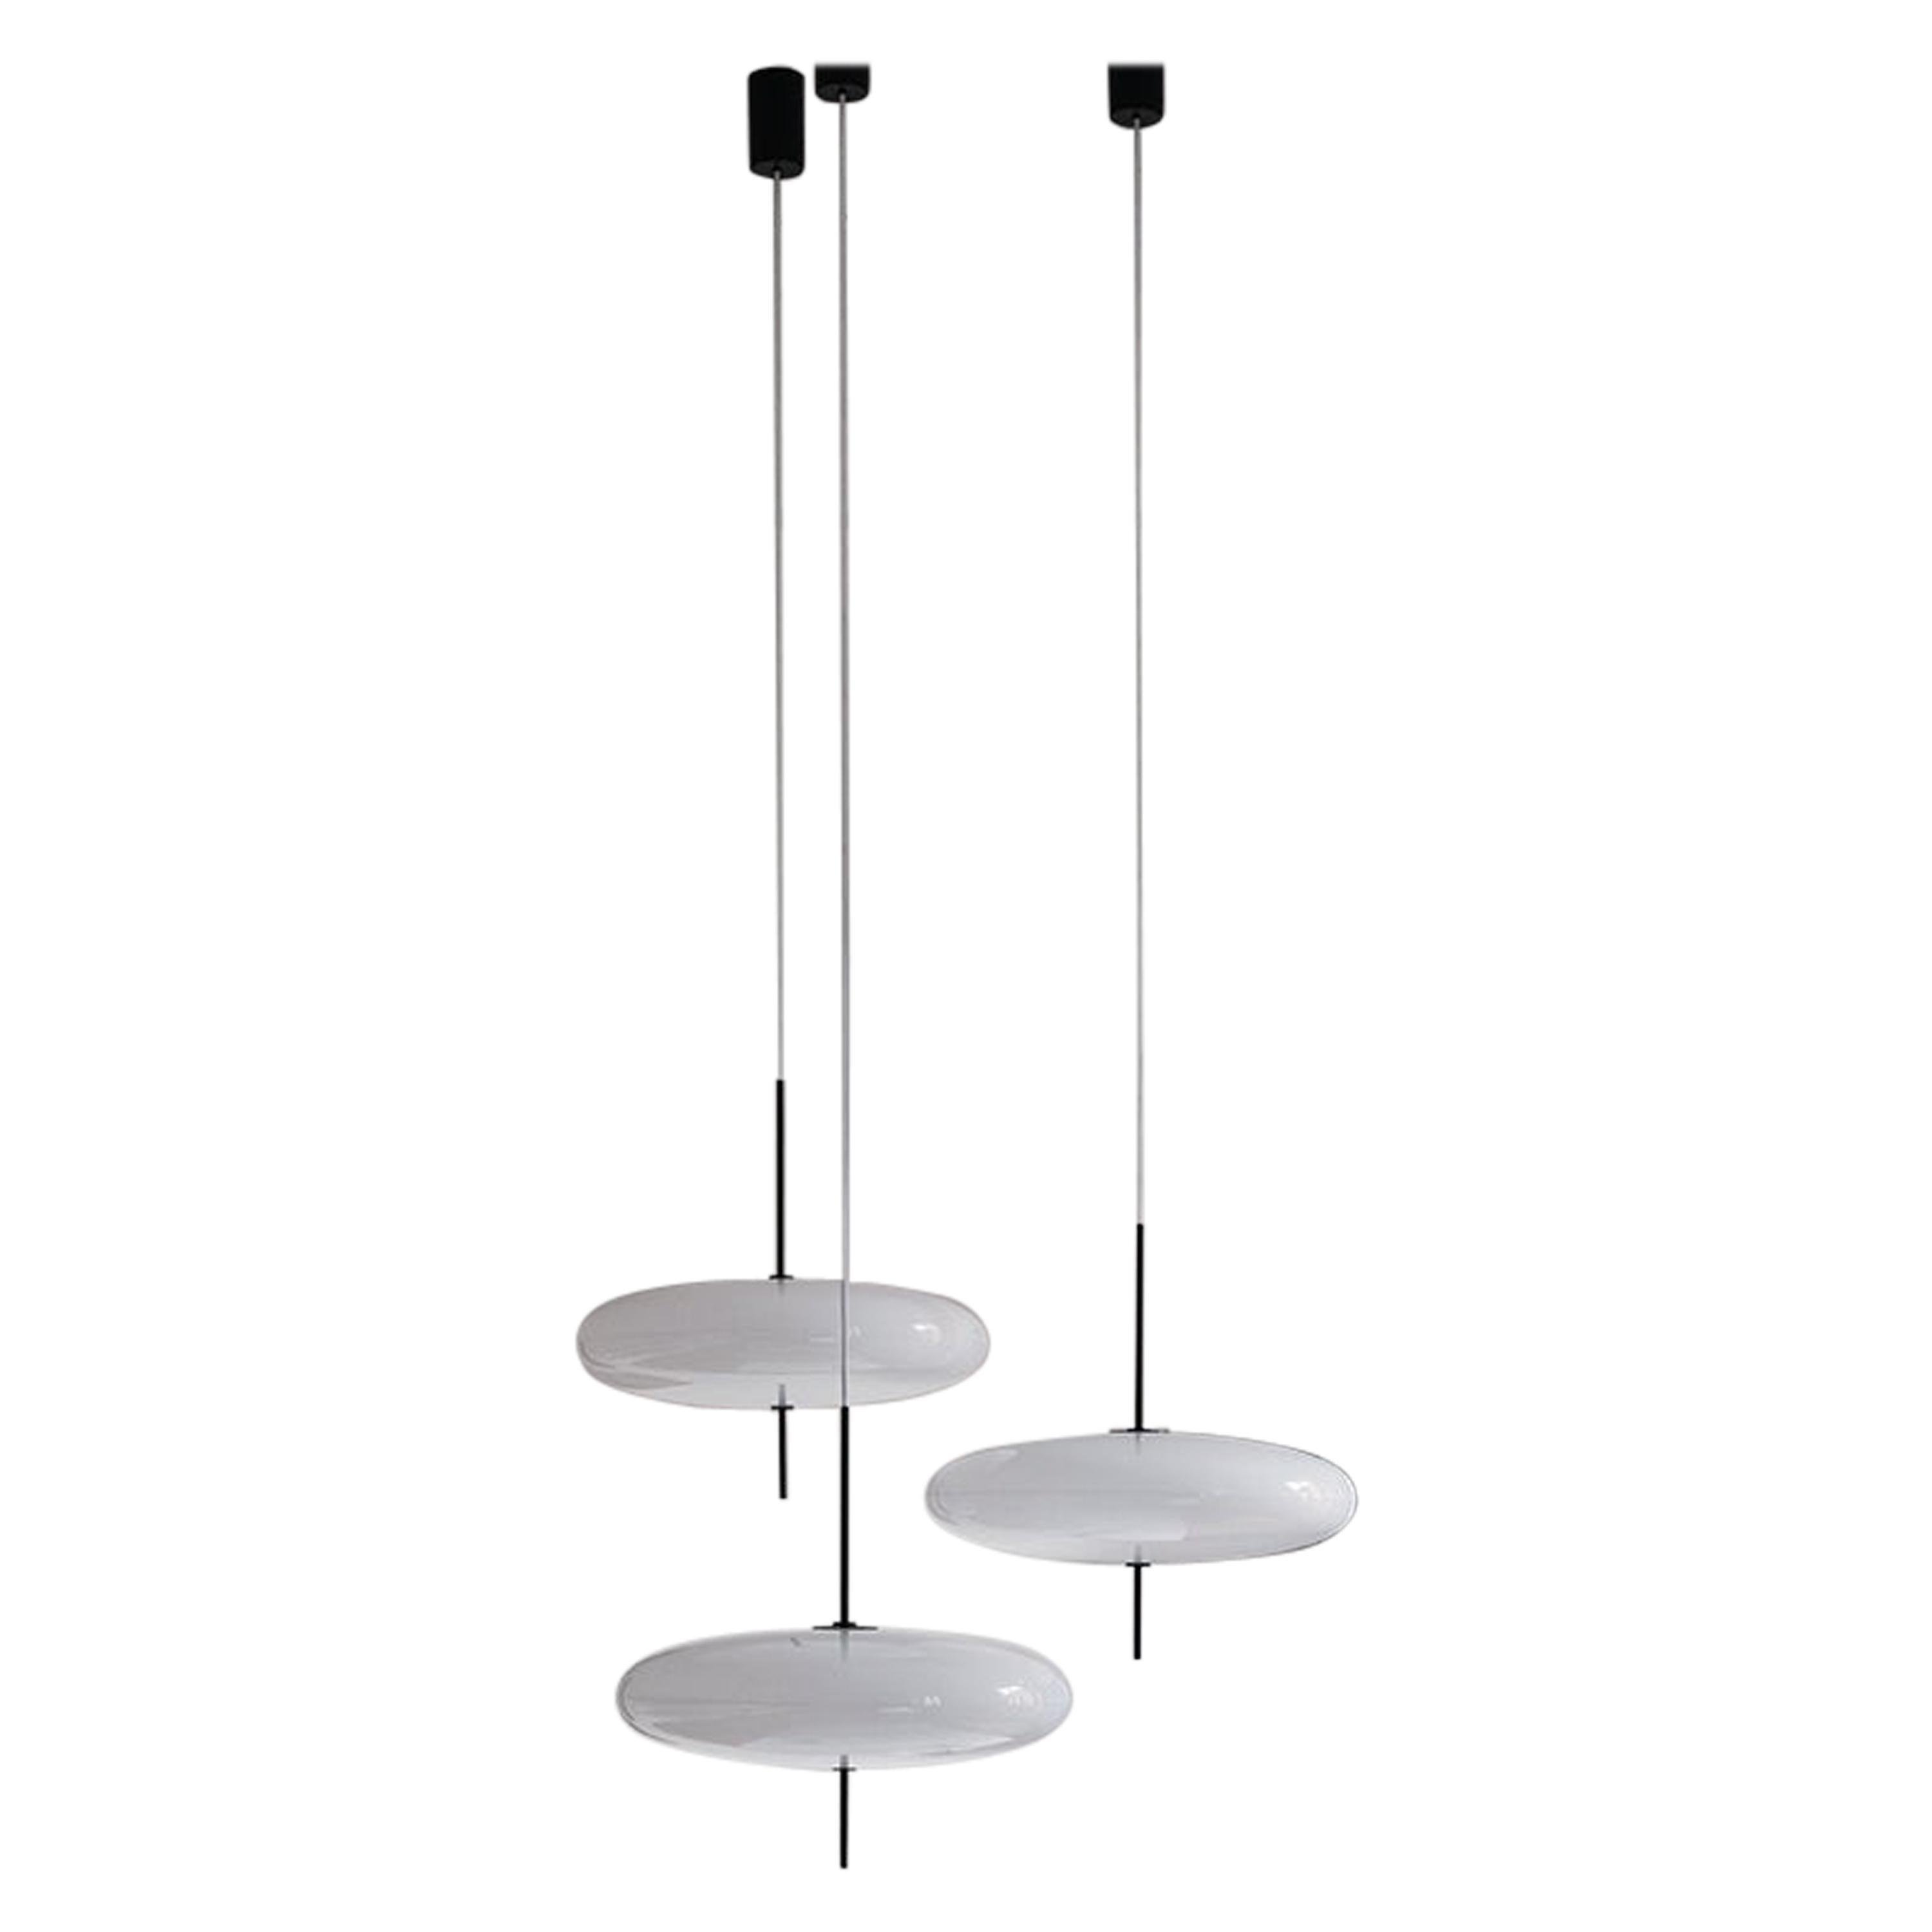 Set 3 Gino Sarfatti-Lampe, Modell 2065, weißer Diffusor, schwarze Hardware, weißer Kabel